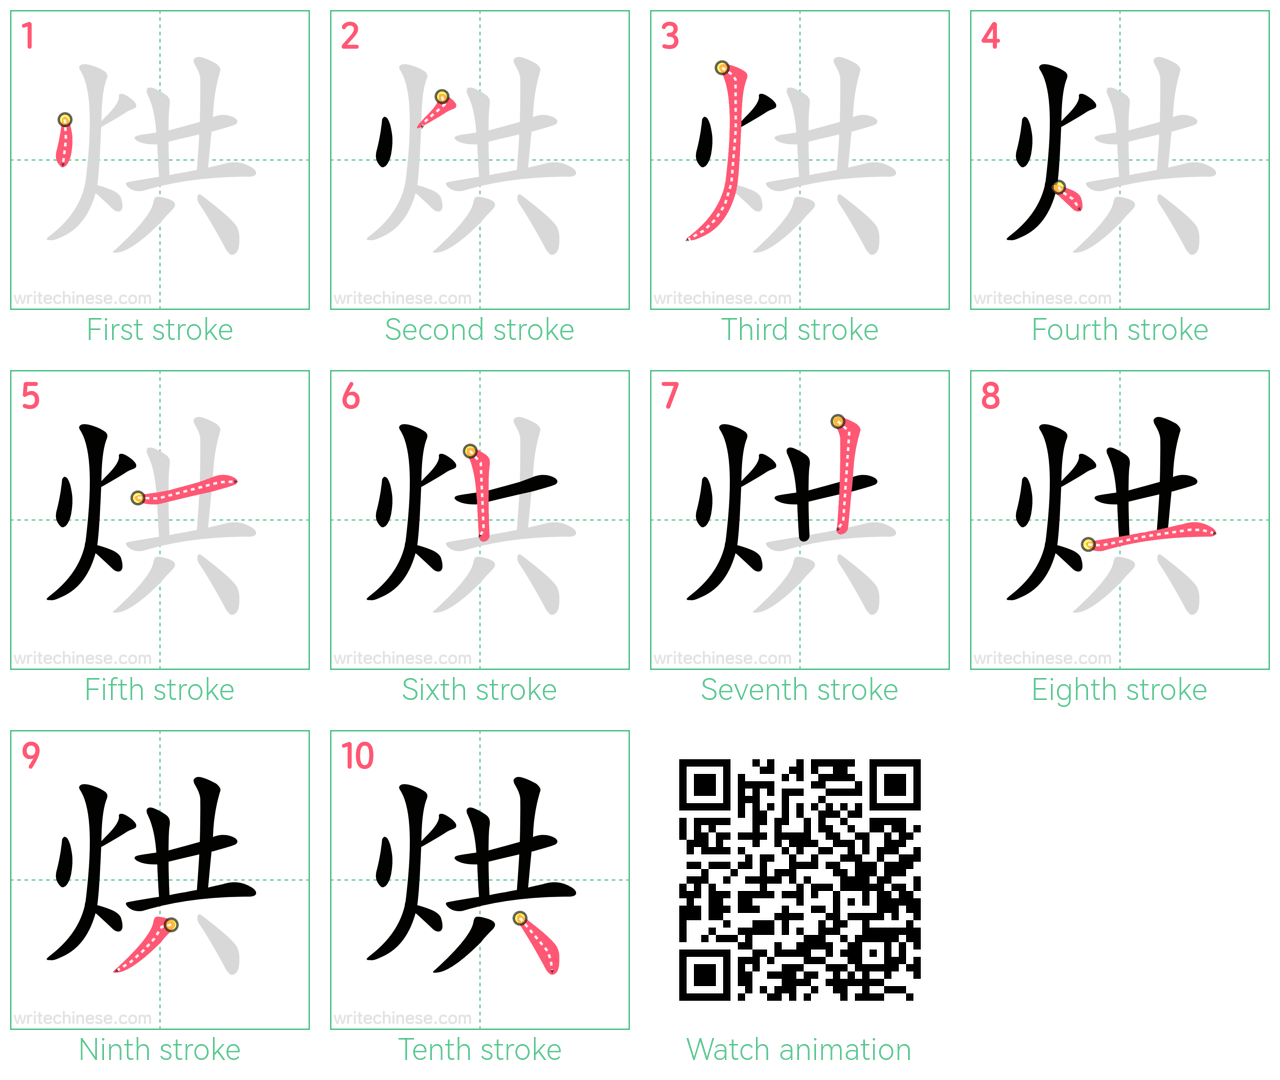 烘 step-by-step stroke order diagrams